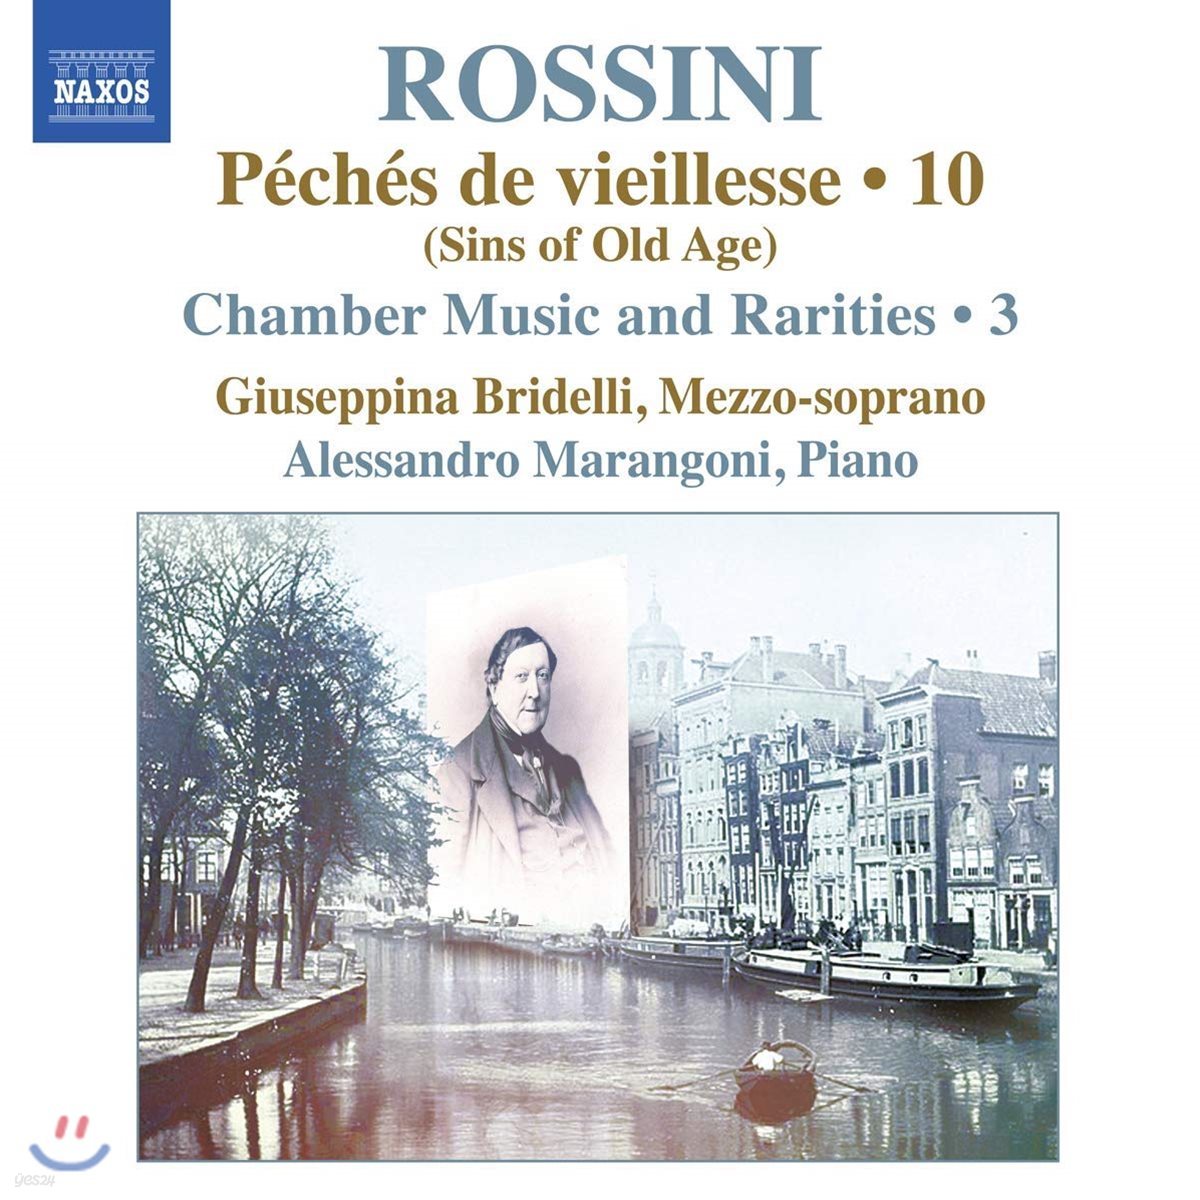 Alessandro Marangoni 로시니: 피아노 작품 10집 (Rossini: Complete Piano Music 10)